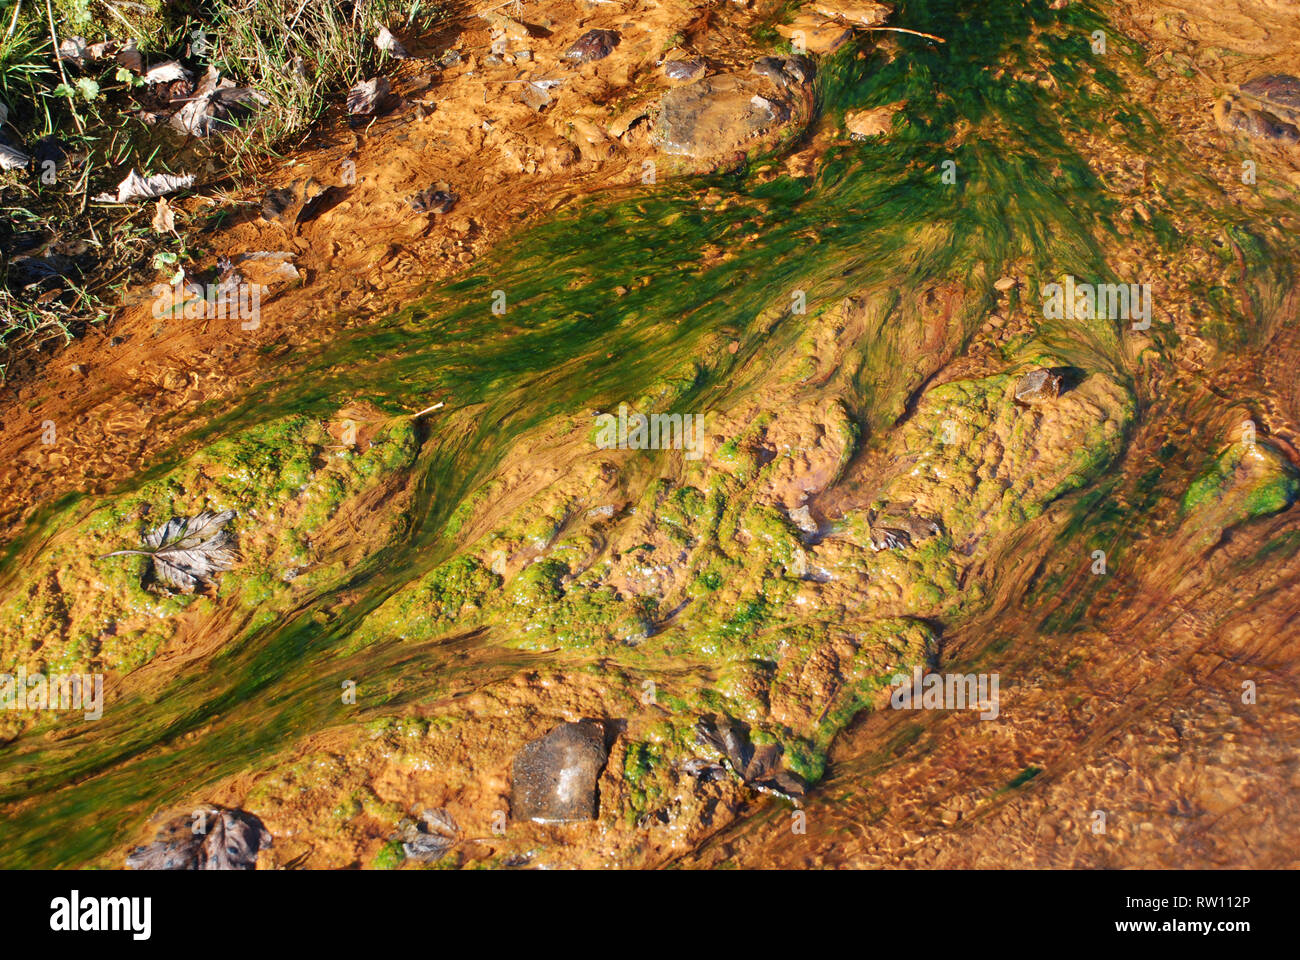 la pollution minérale causée par les anciennes exploitations minières dans l'eau montre des mousses et des algues qui poussent dans l'eau décolorée Banque D'Images